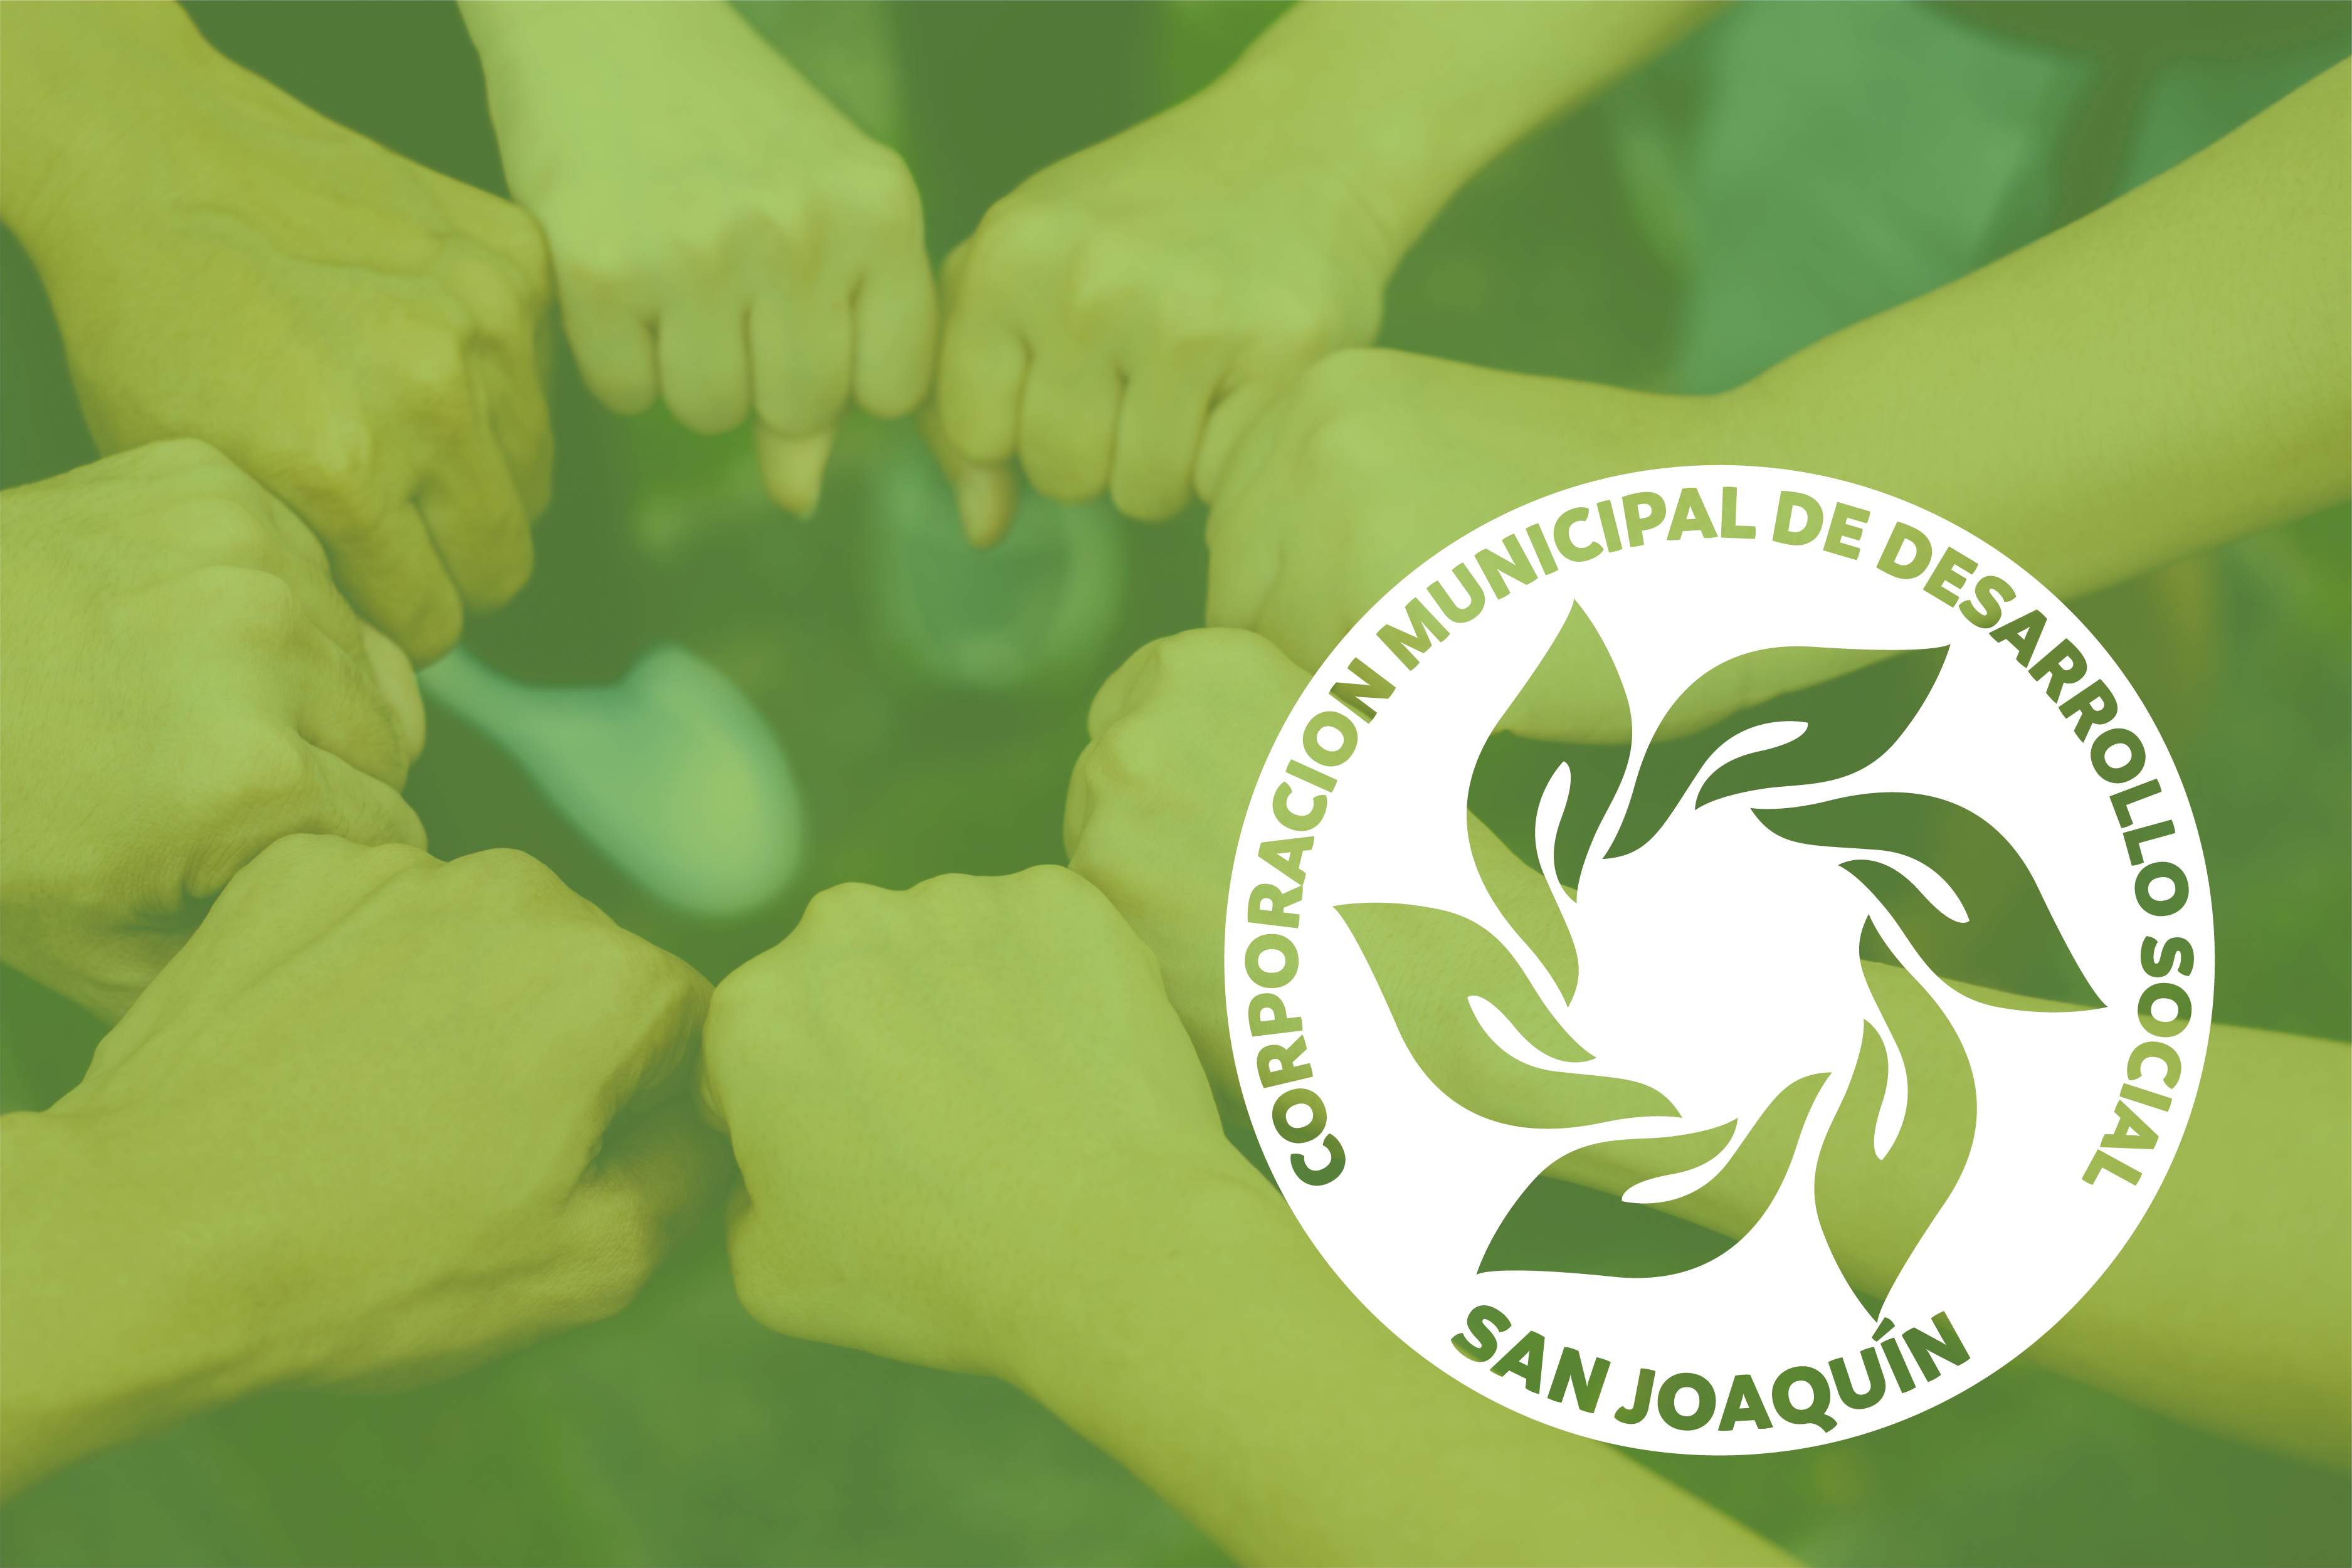 Corporación Municipal de Desarrollo Social San Joaquín